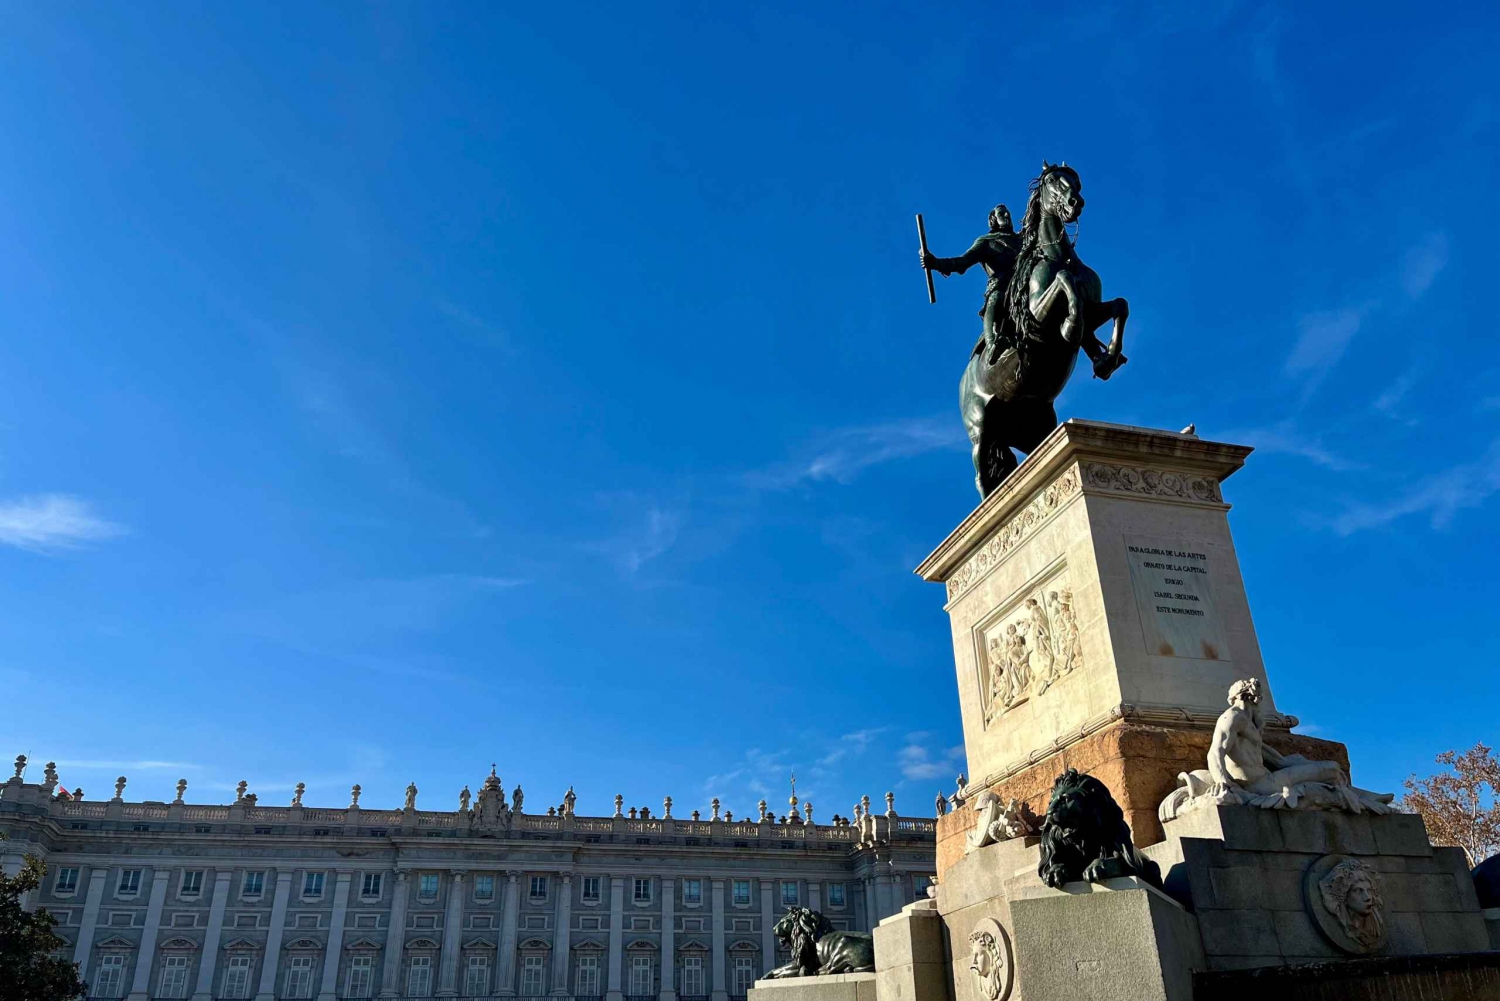 Upptäck Madrid genom att leta efter Filip IV:s skatt